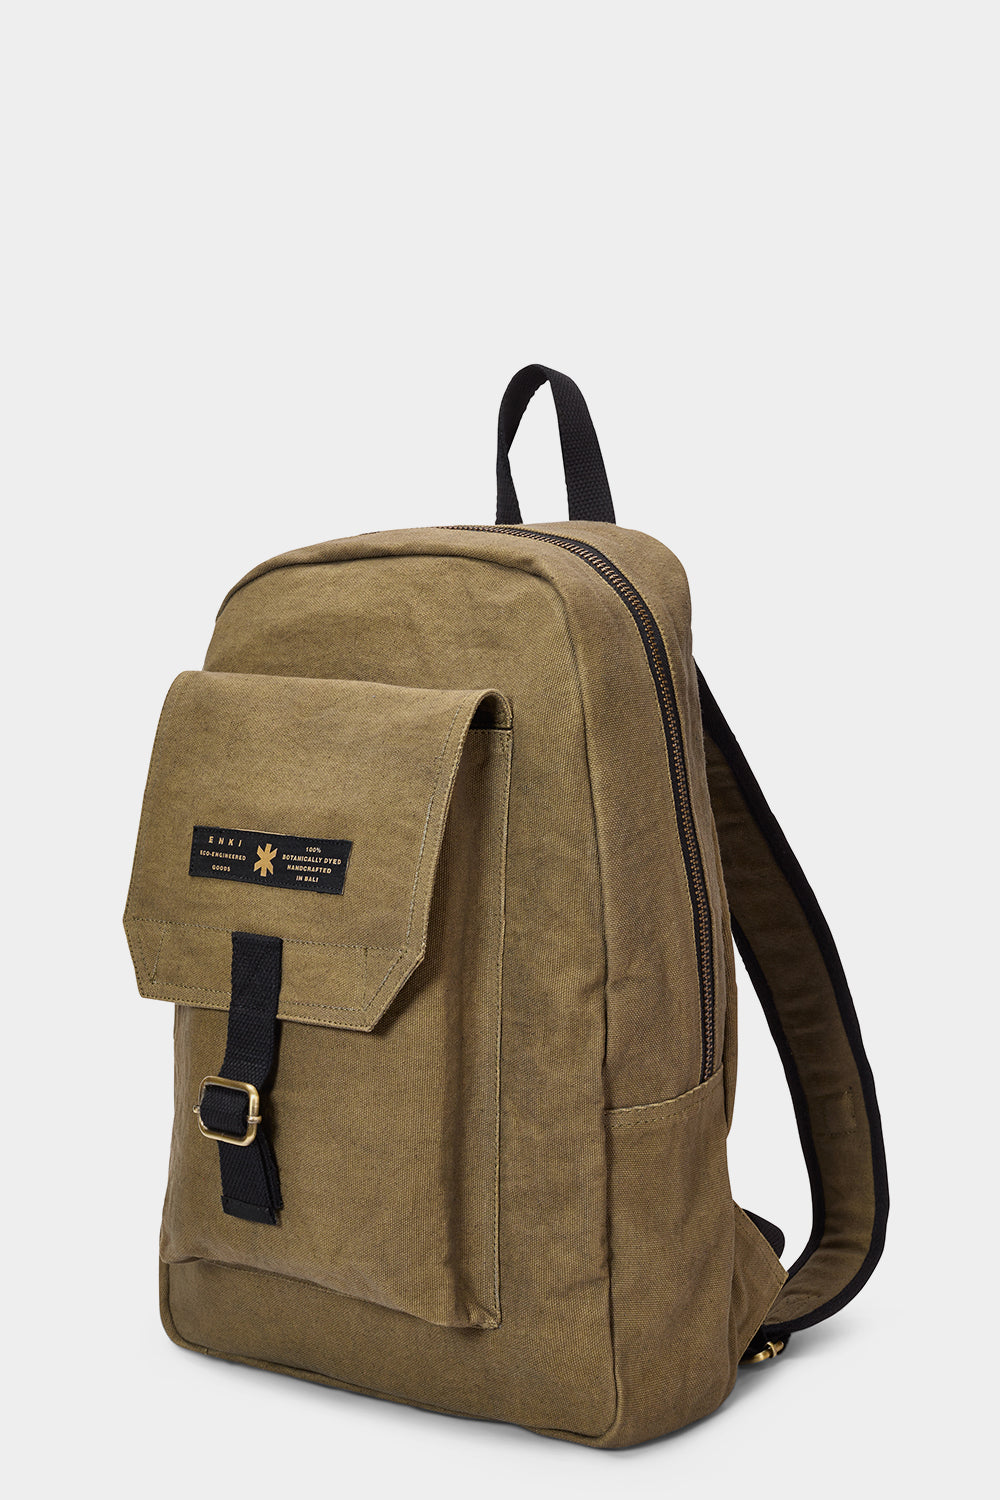 www.enkieyewear.com Enki Eco Psyche Men’s and Women’s Zipper Backpack 